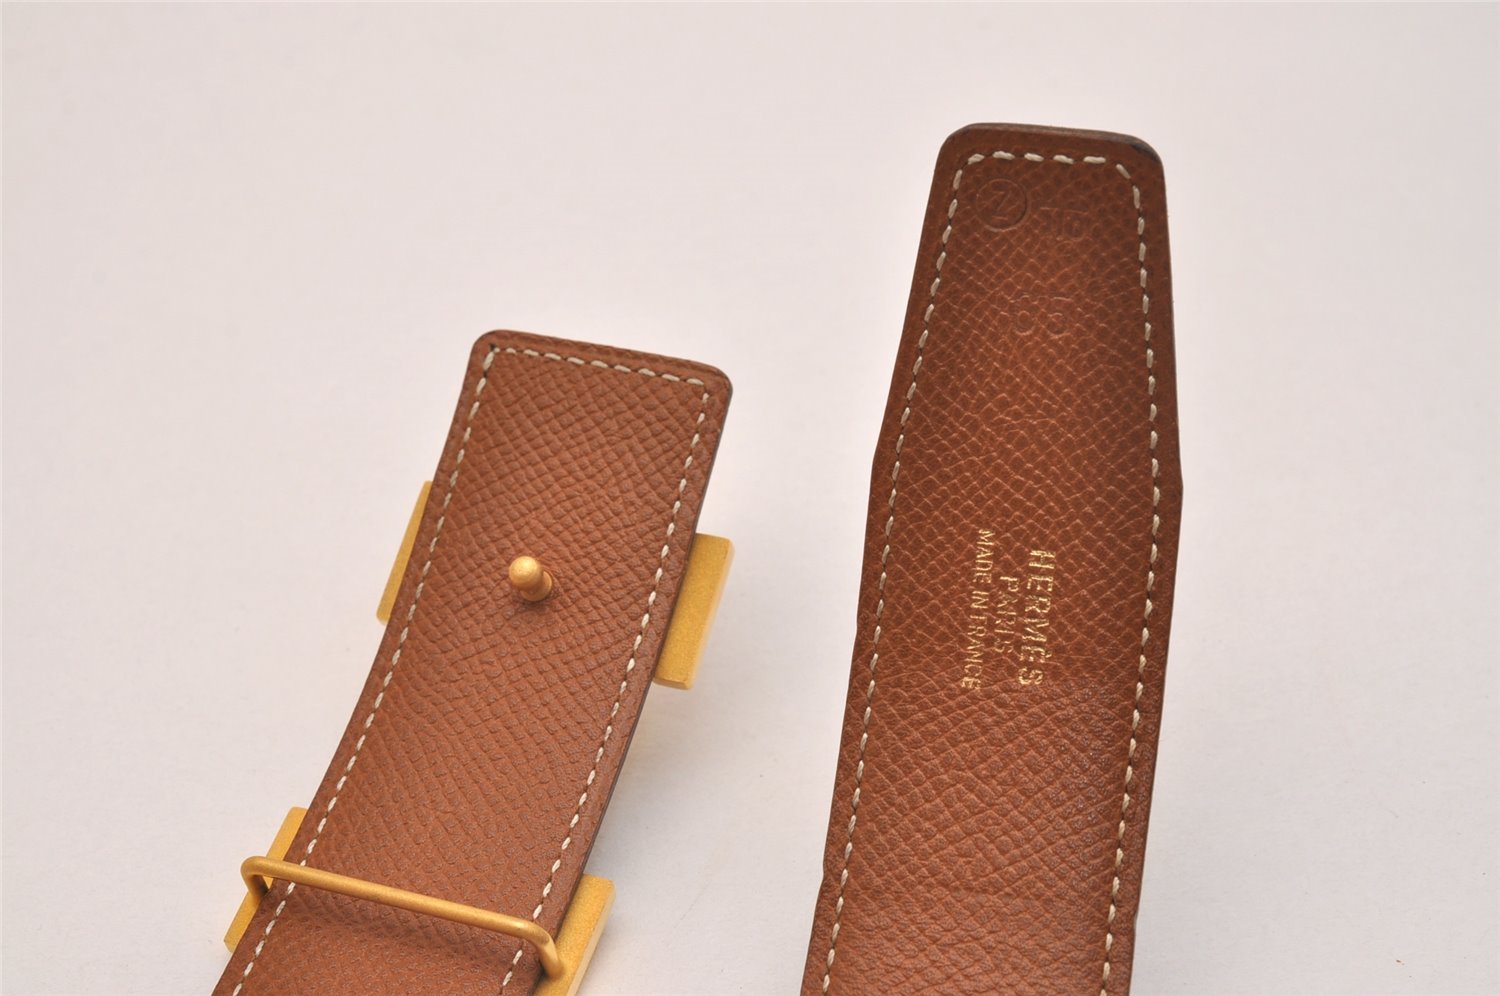 Authentic HERMES Constance Leather Belt Size 65cm 25.6